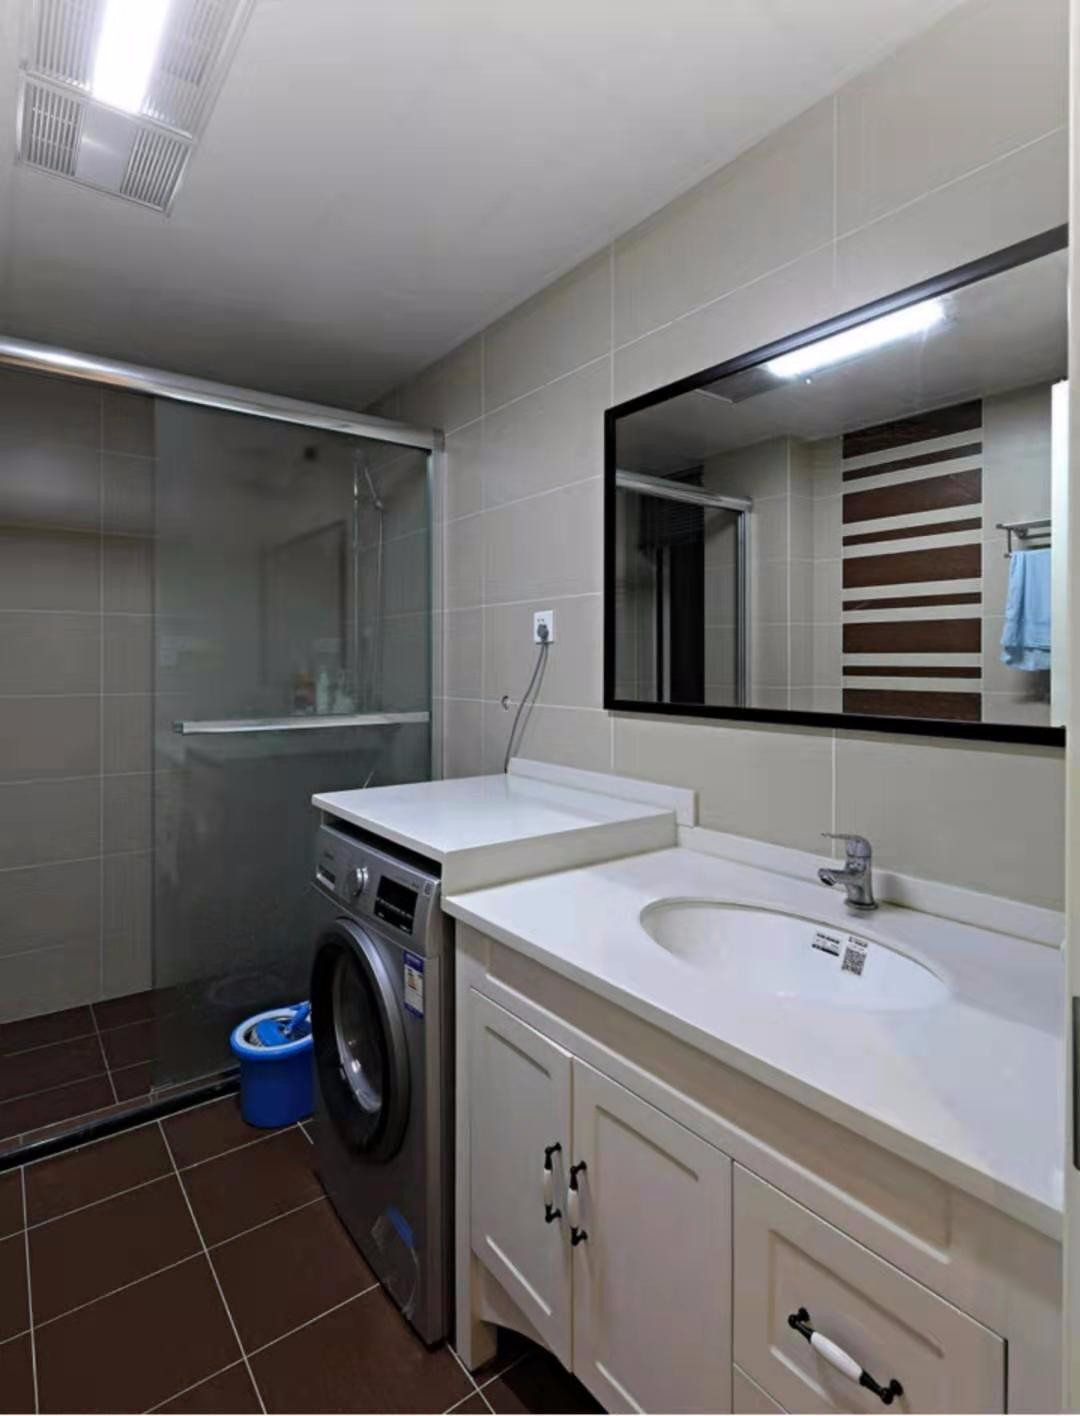 卫生间采用淋浴隔断做干湿分区 定做大理石台面放洗衣机增加使用空间